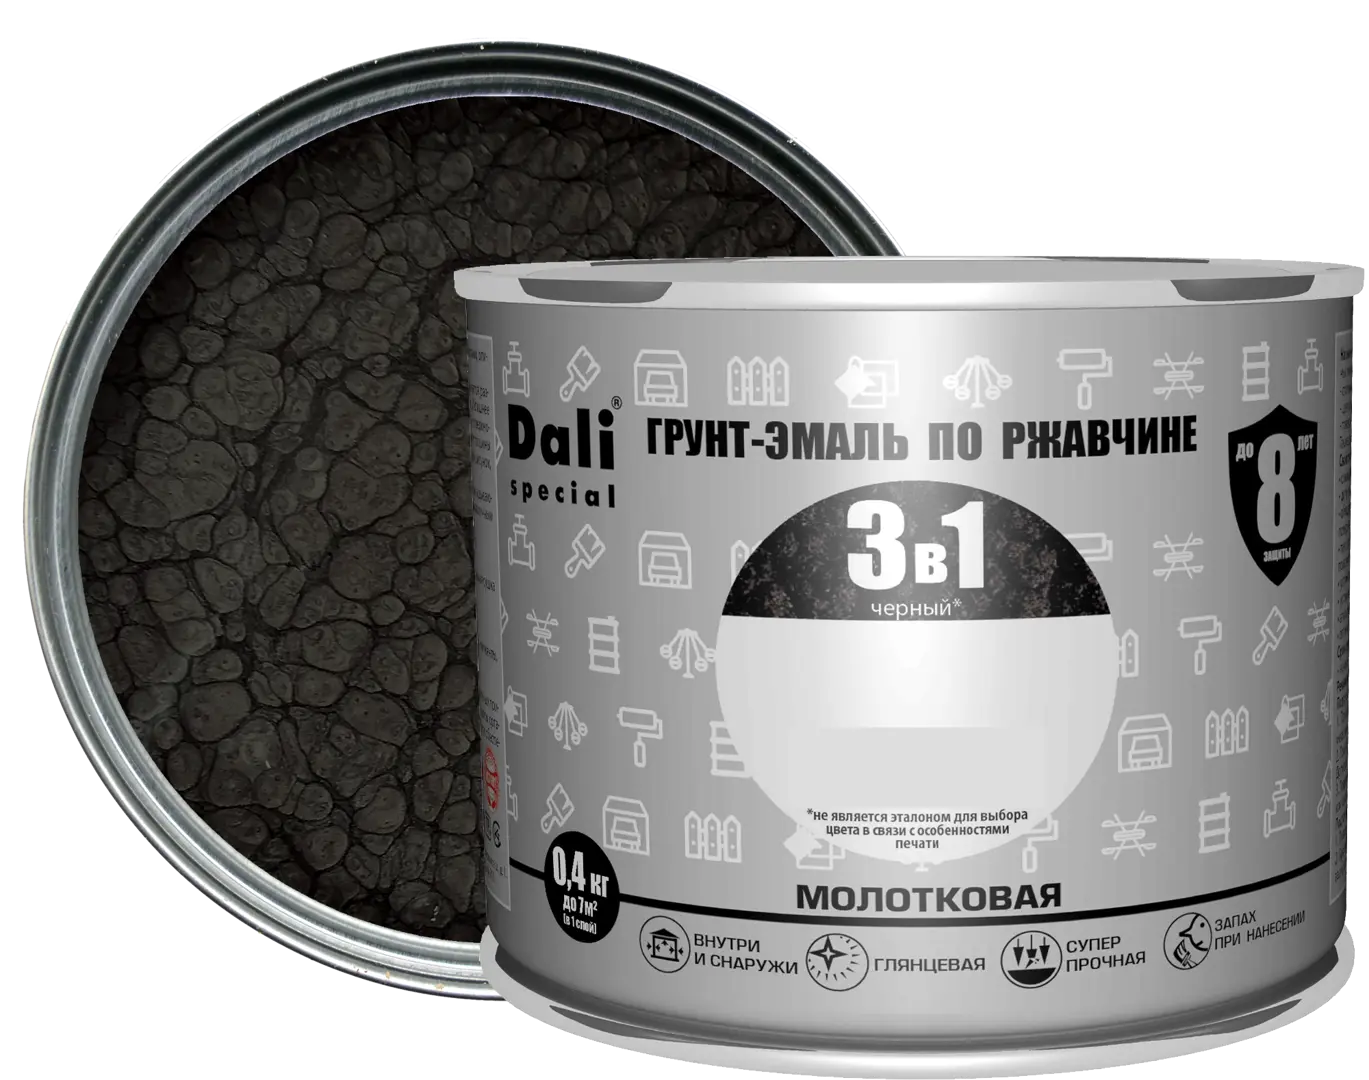 Грунт-эмаль по ржавчине 3 в 1 Dali Special молотковая цвет чёрный 0.4 кг банка для капсул кофемашины coffee 17×10 см цвет чёрный